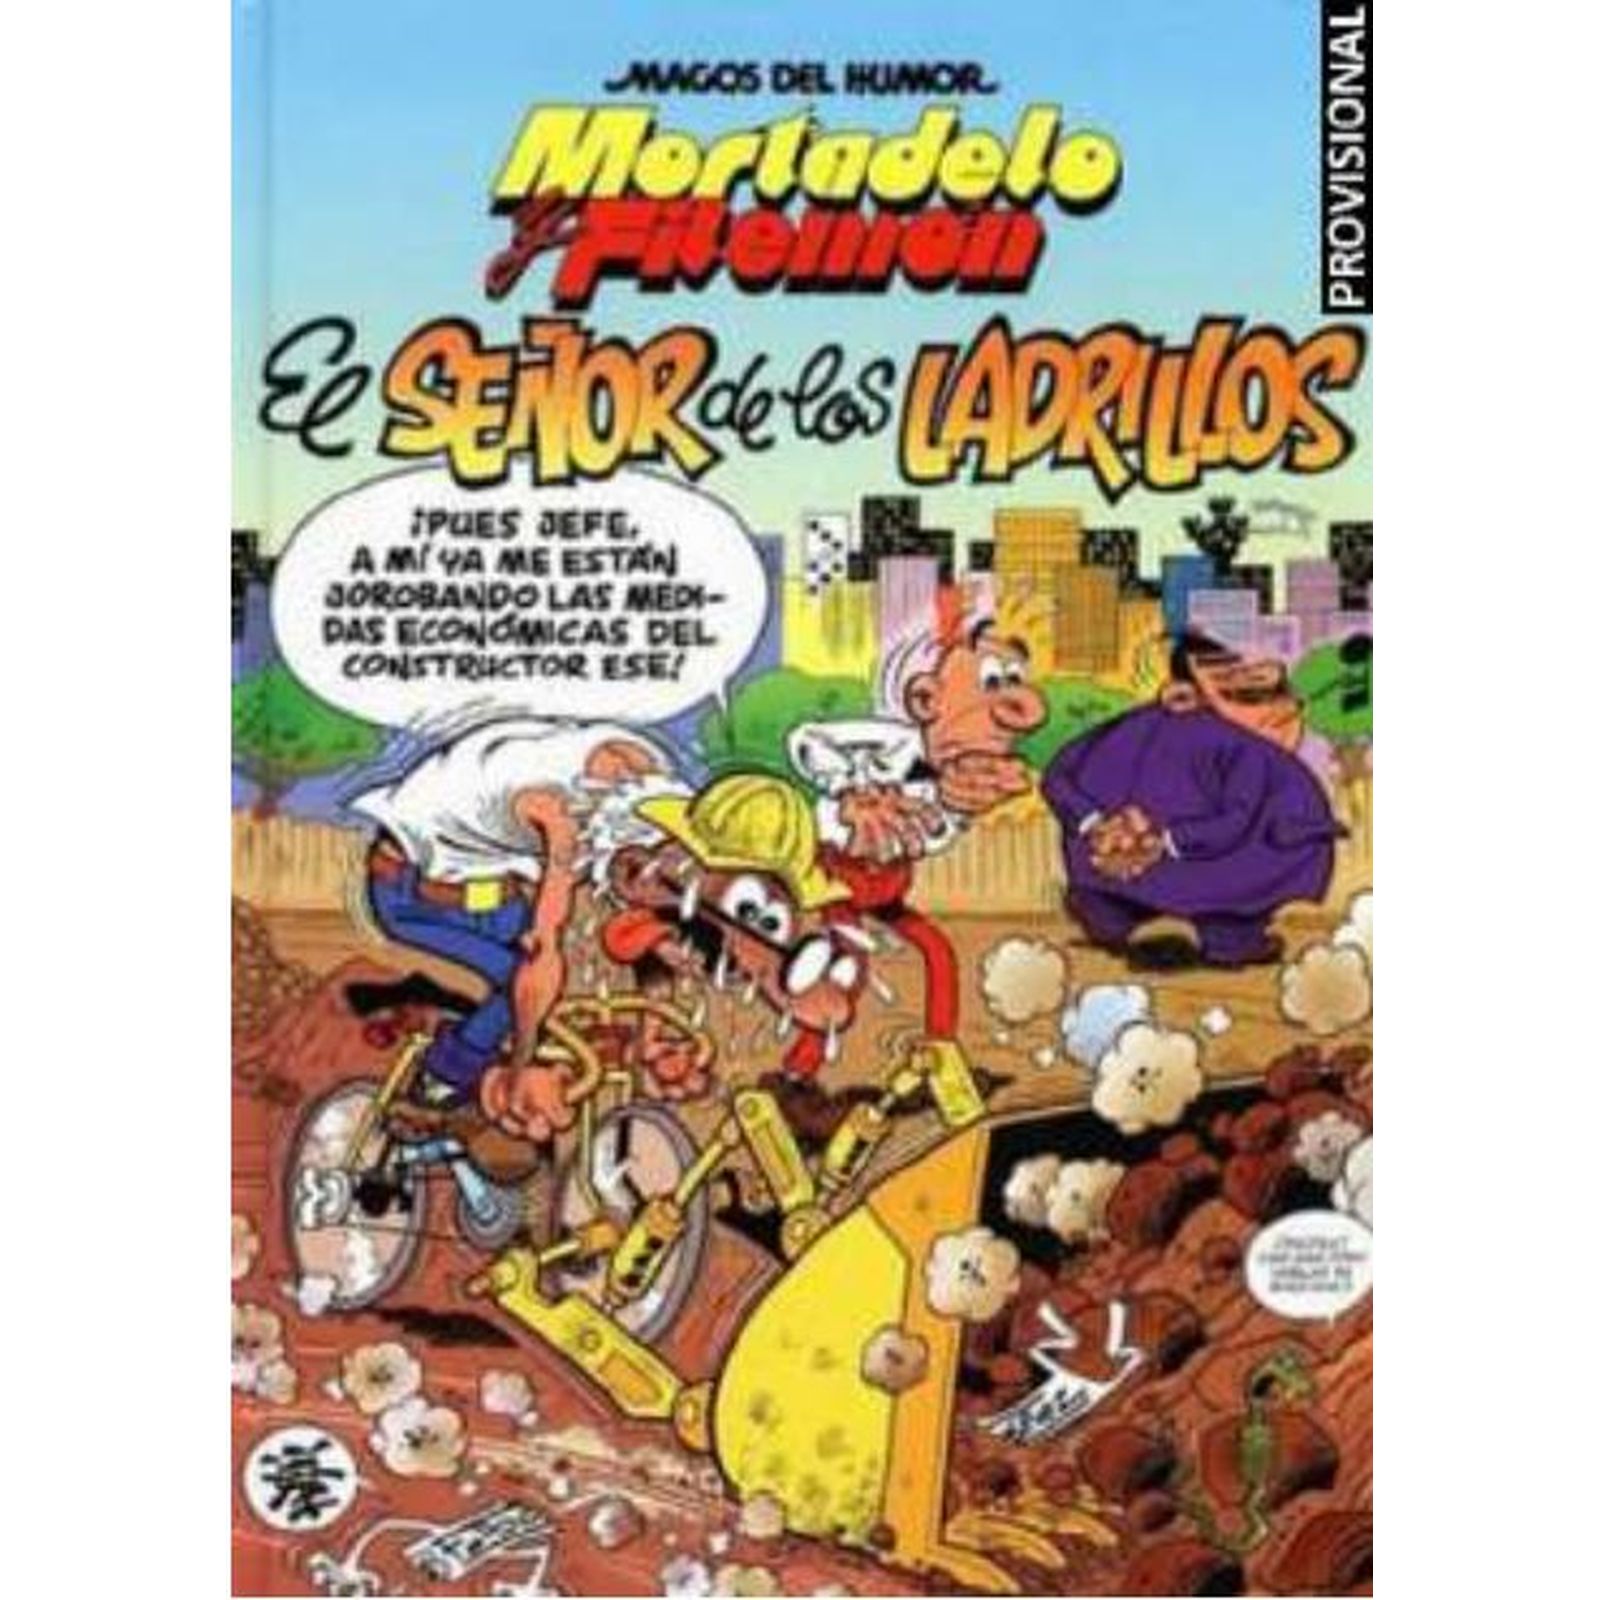 MAGOS DEL HUMOR 104. .EL SEÑOR DE LOS LADRILLOS (MORTADELO Y FILEMON)